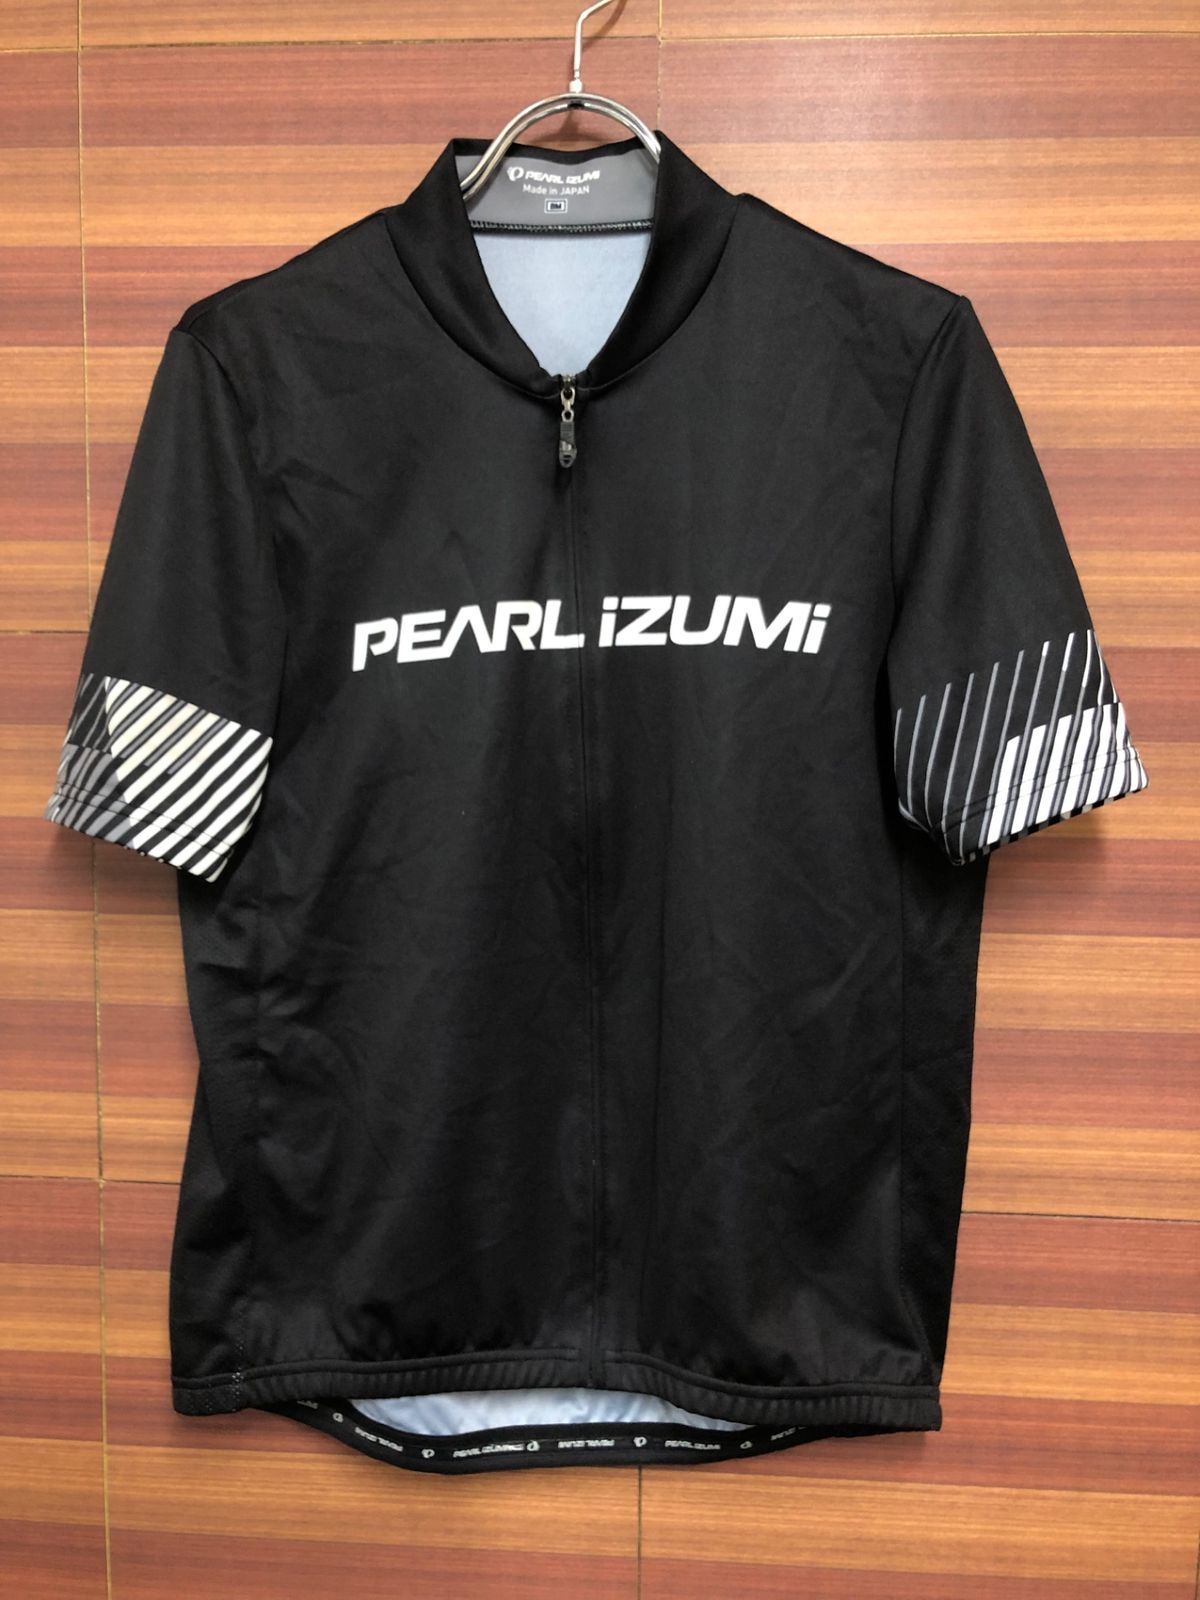 HS098 パールイズミ PEARL iZUMi 半袖 サイクルジャージ 黒 BM - メルカリ